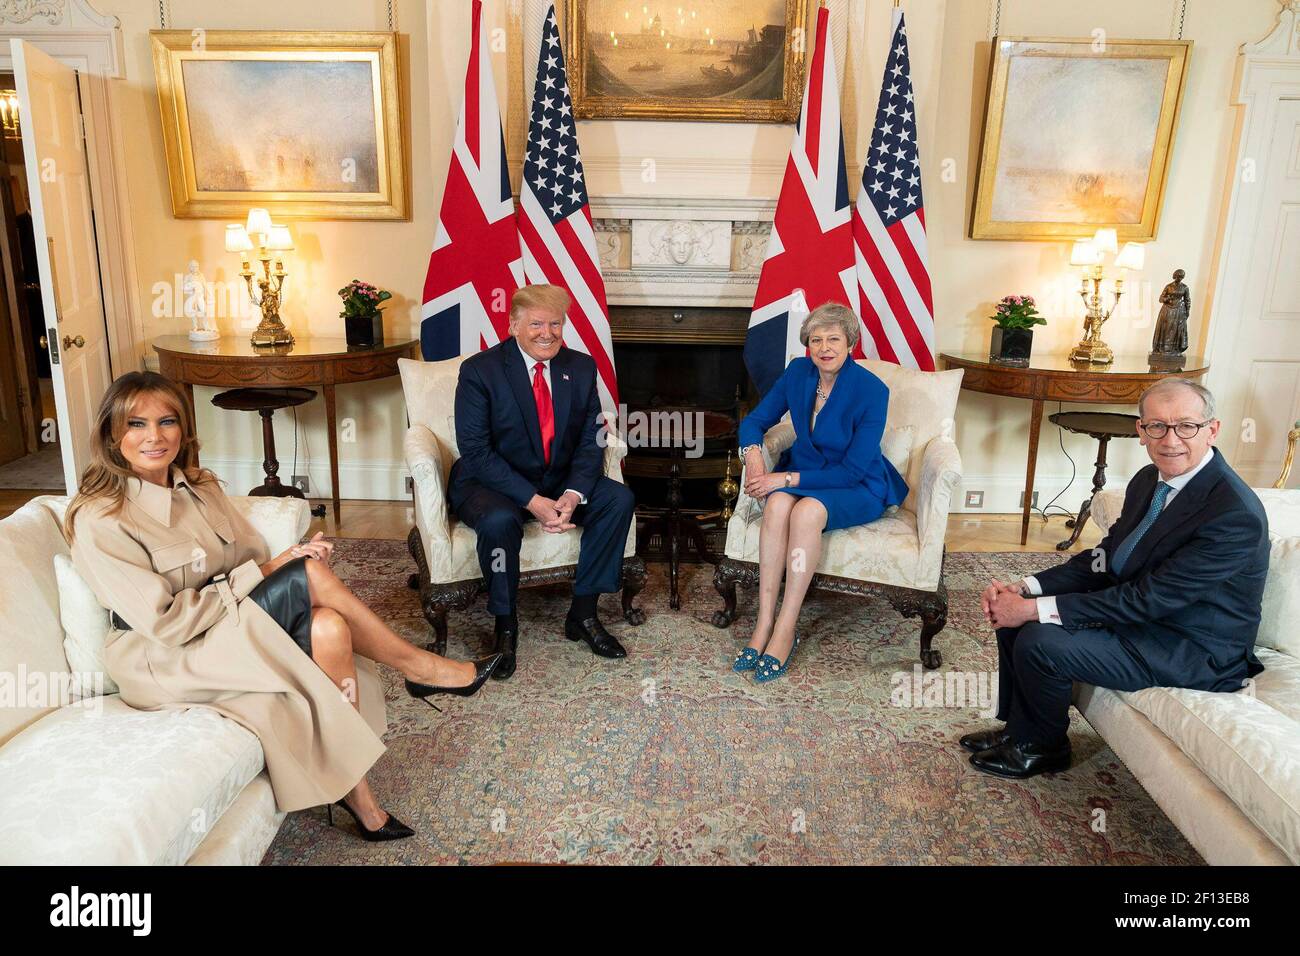 Le président Donald Trump la première dame Melania Trump la première ministre britannique Theresa May et son mari, M. Philip May, posent pour une photo au n° 10 Downing Street mardi 4 2019 juin à Londres. Banque D'Images